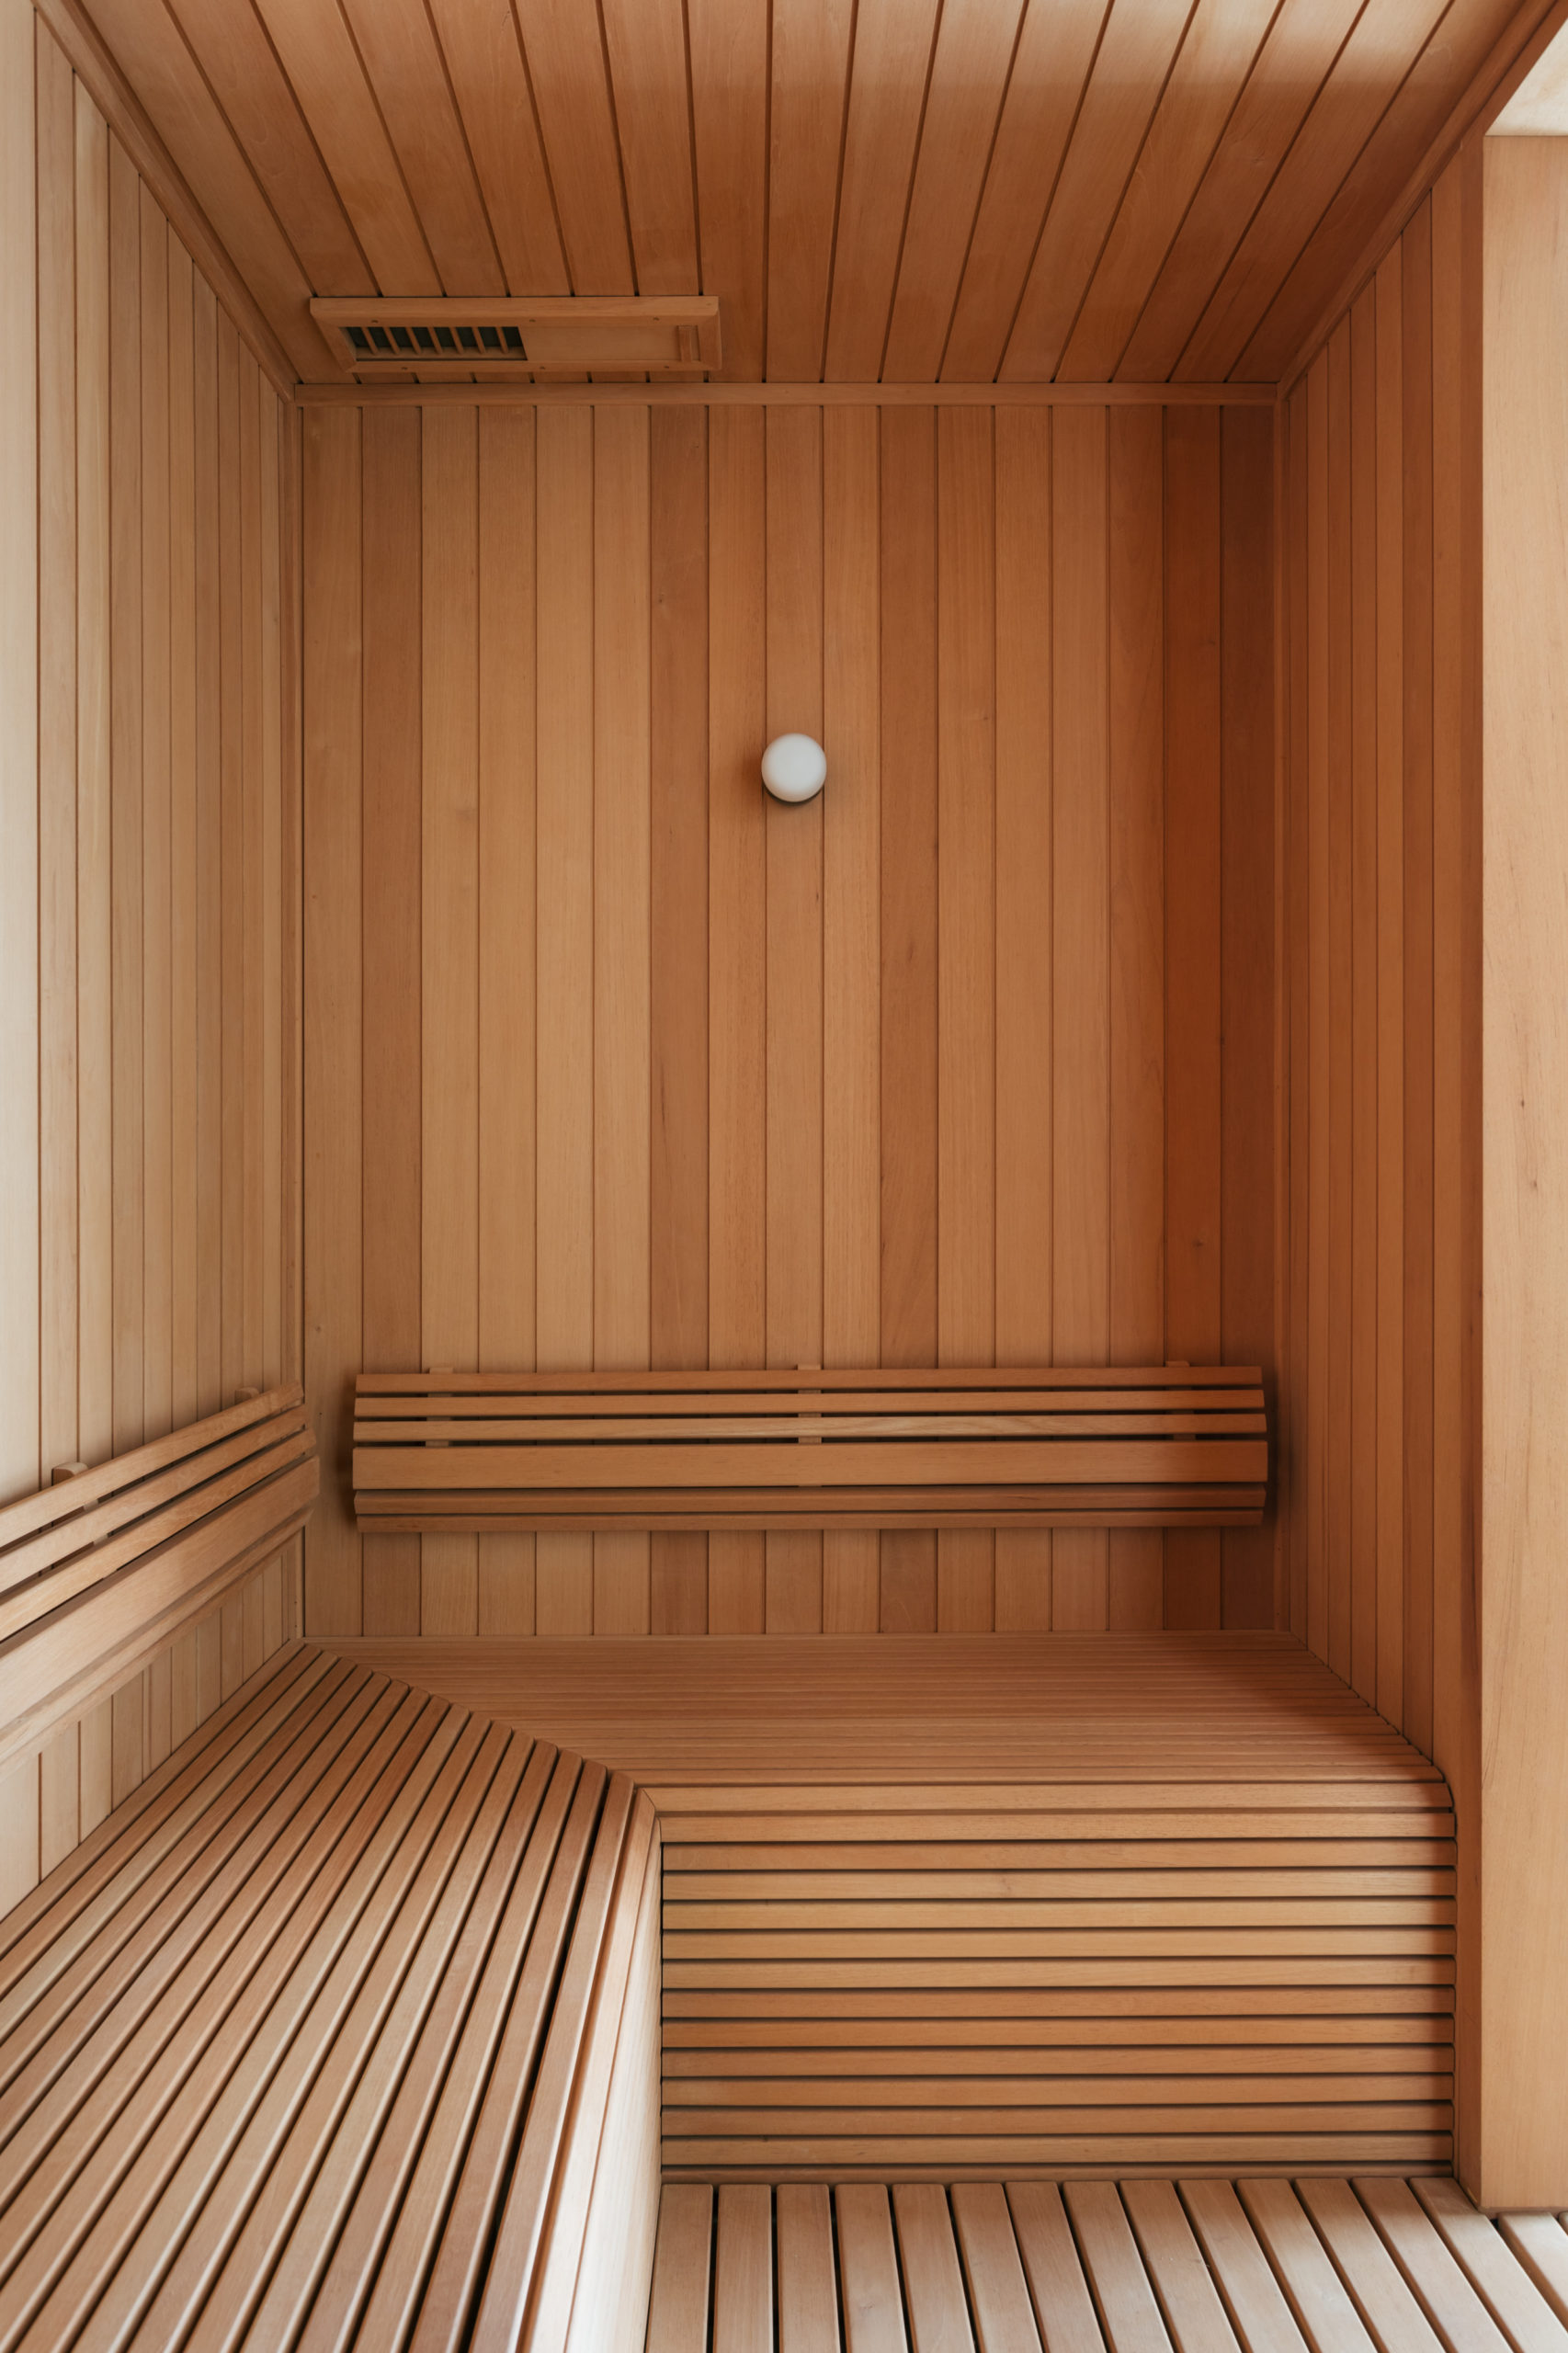 Sauna toda revestida em madeira, no centro de um apartamento.